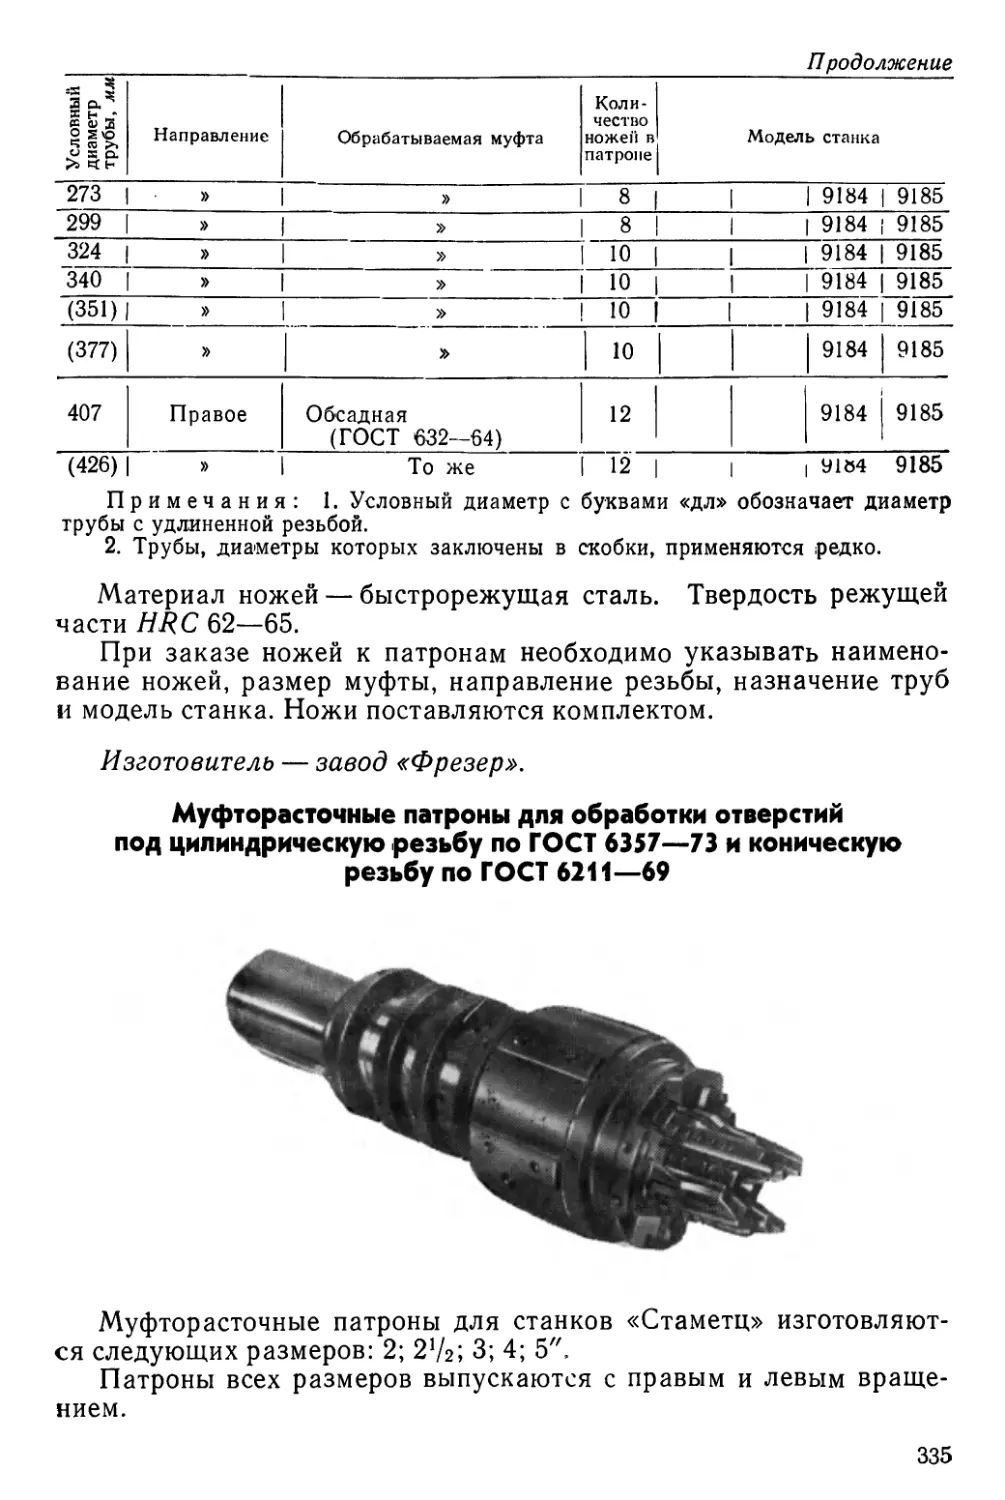 Муфторасточные патроны для обработки отверстий под цилиндрическую резьбу по ГОСТ 6357—73 и коническую резьбу по ГОСТ 6211—69